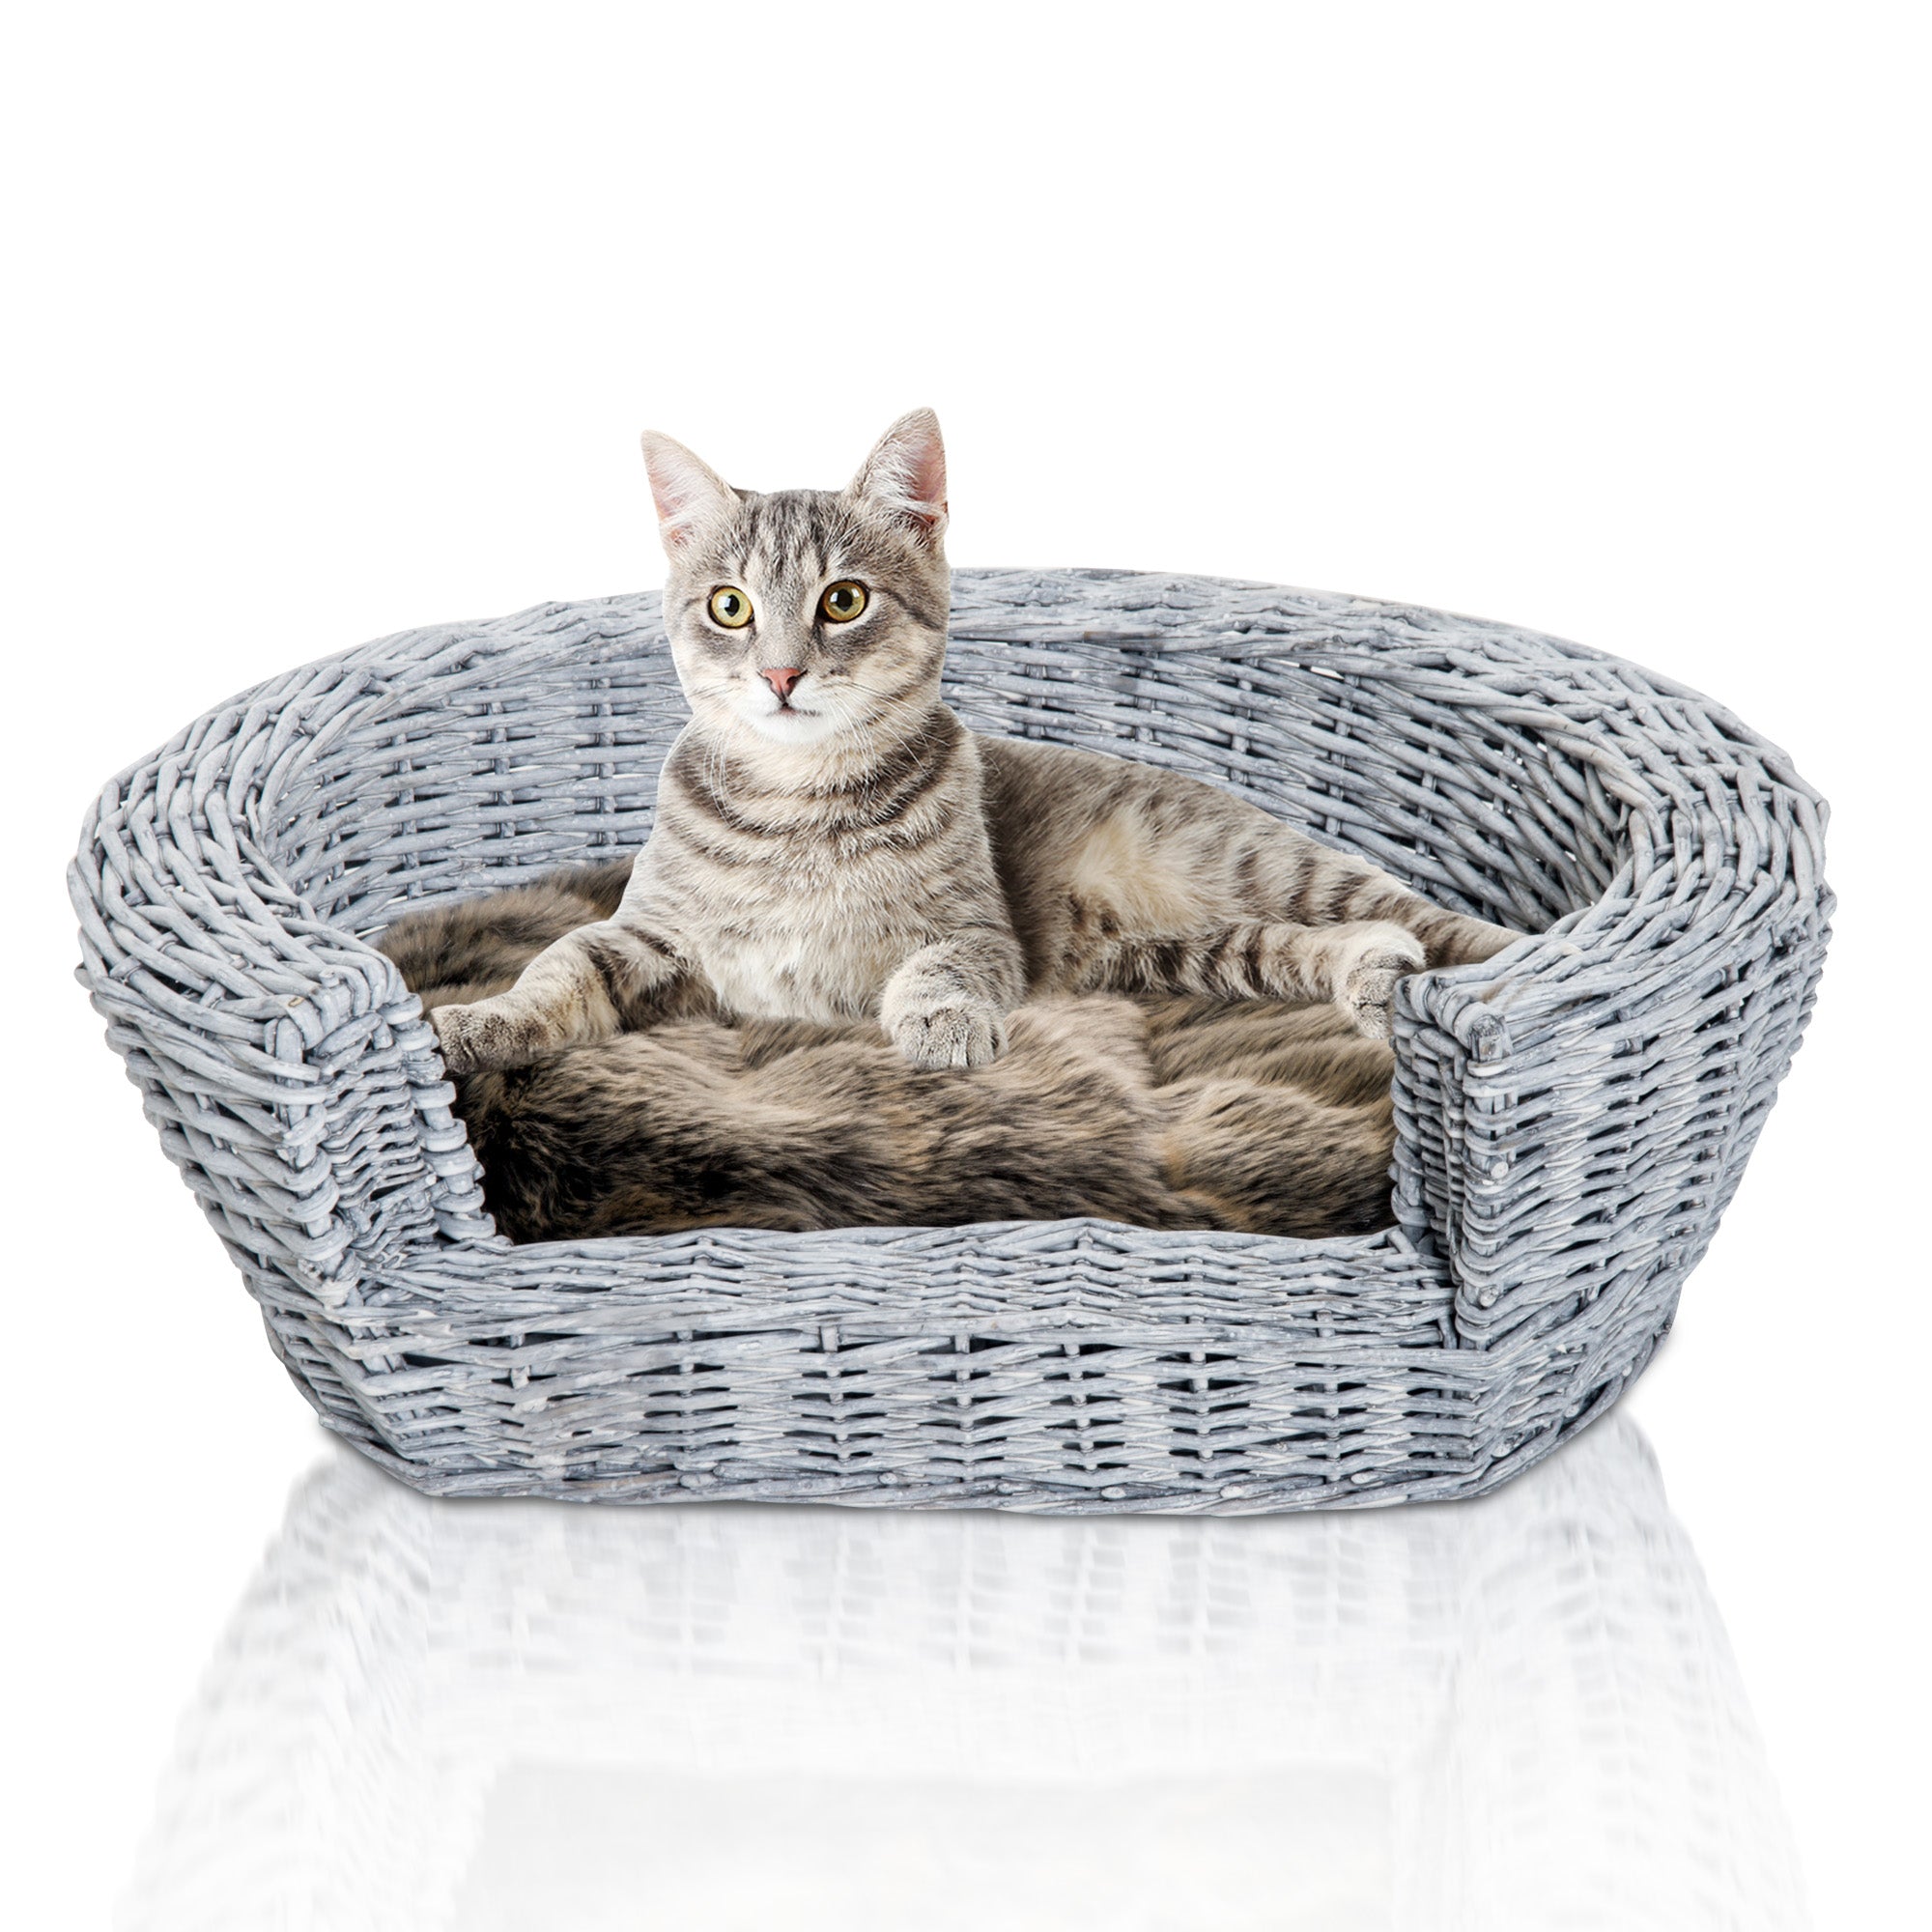 Pet Basket Sofa Bed, 57Lx46Wx17.5H cm, Willow Rattan-Grey